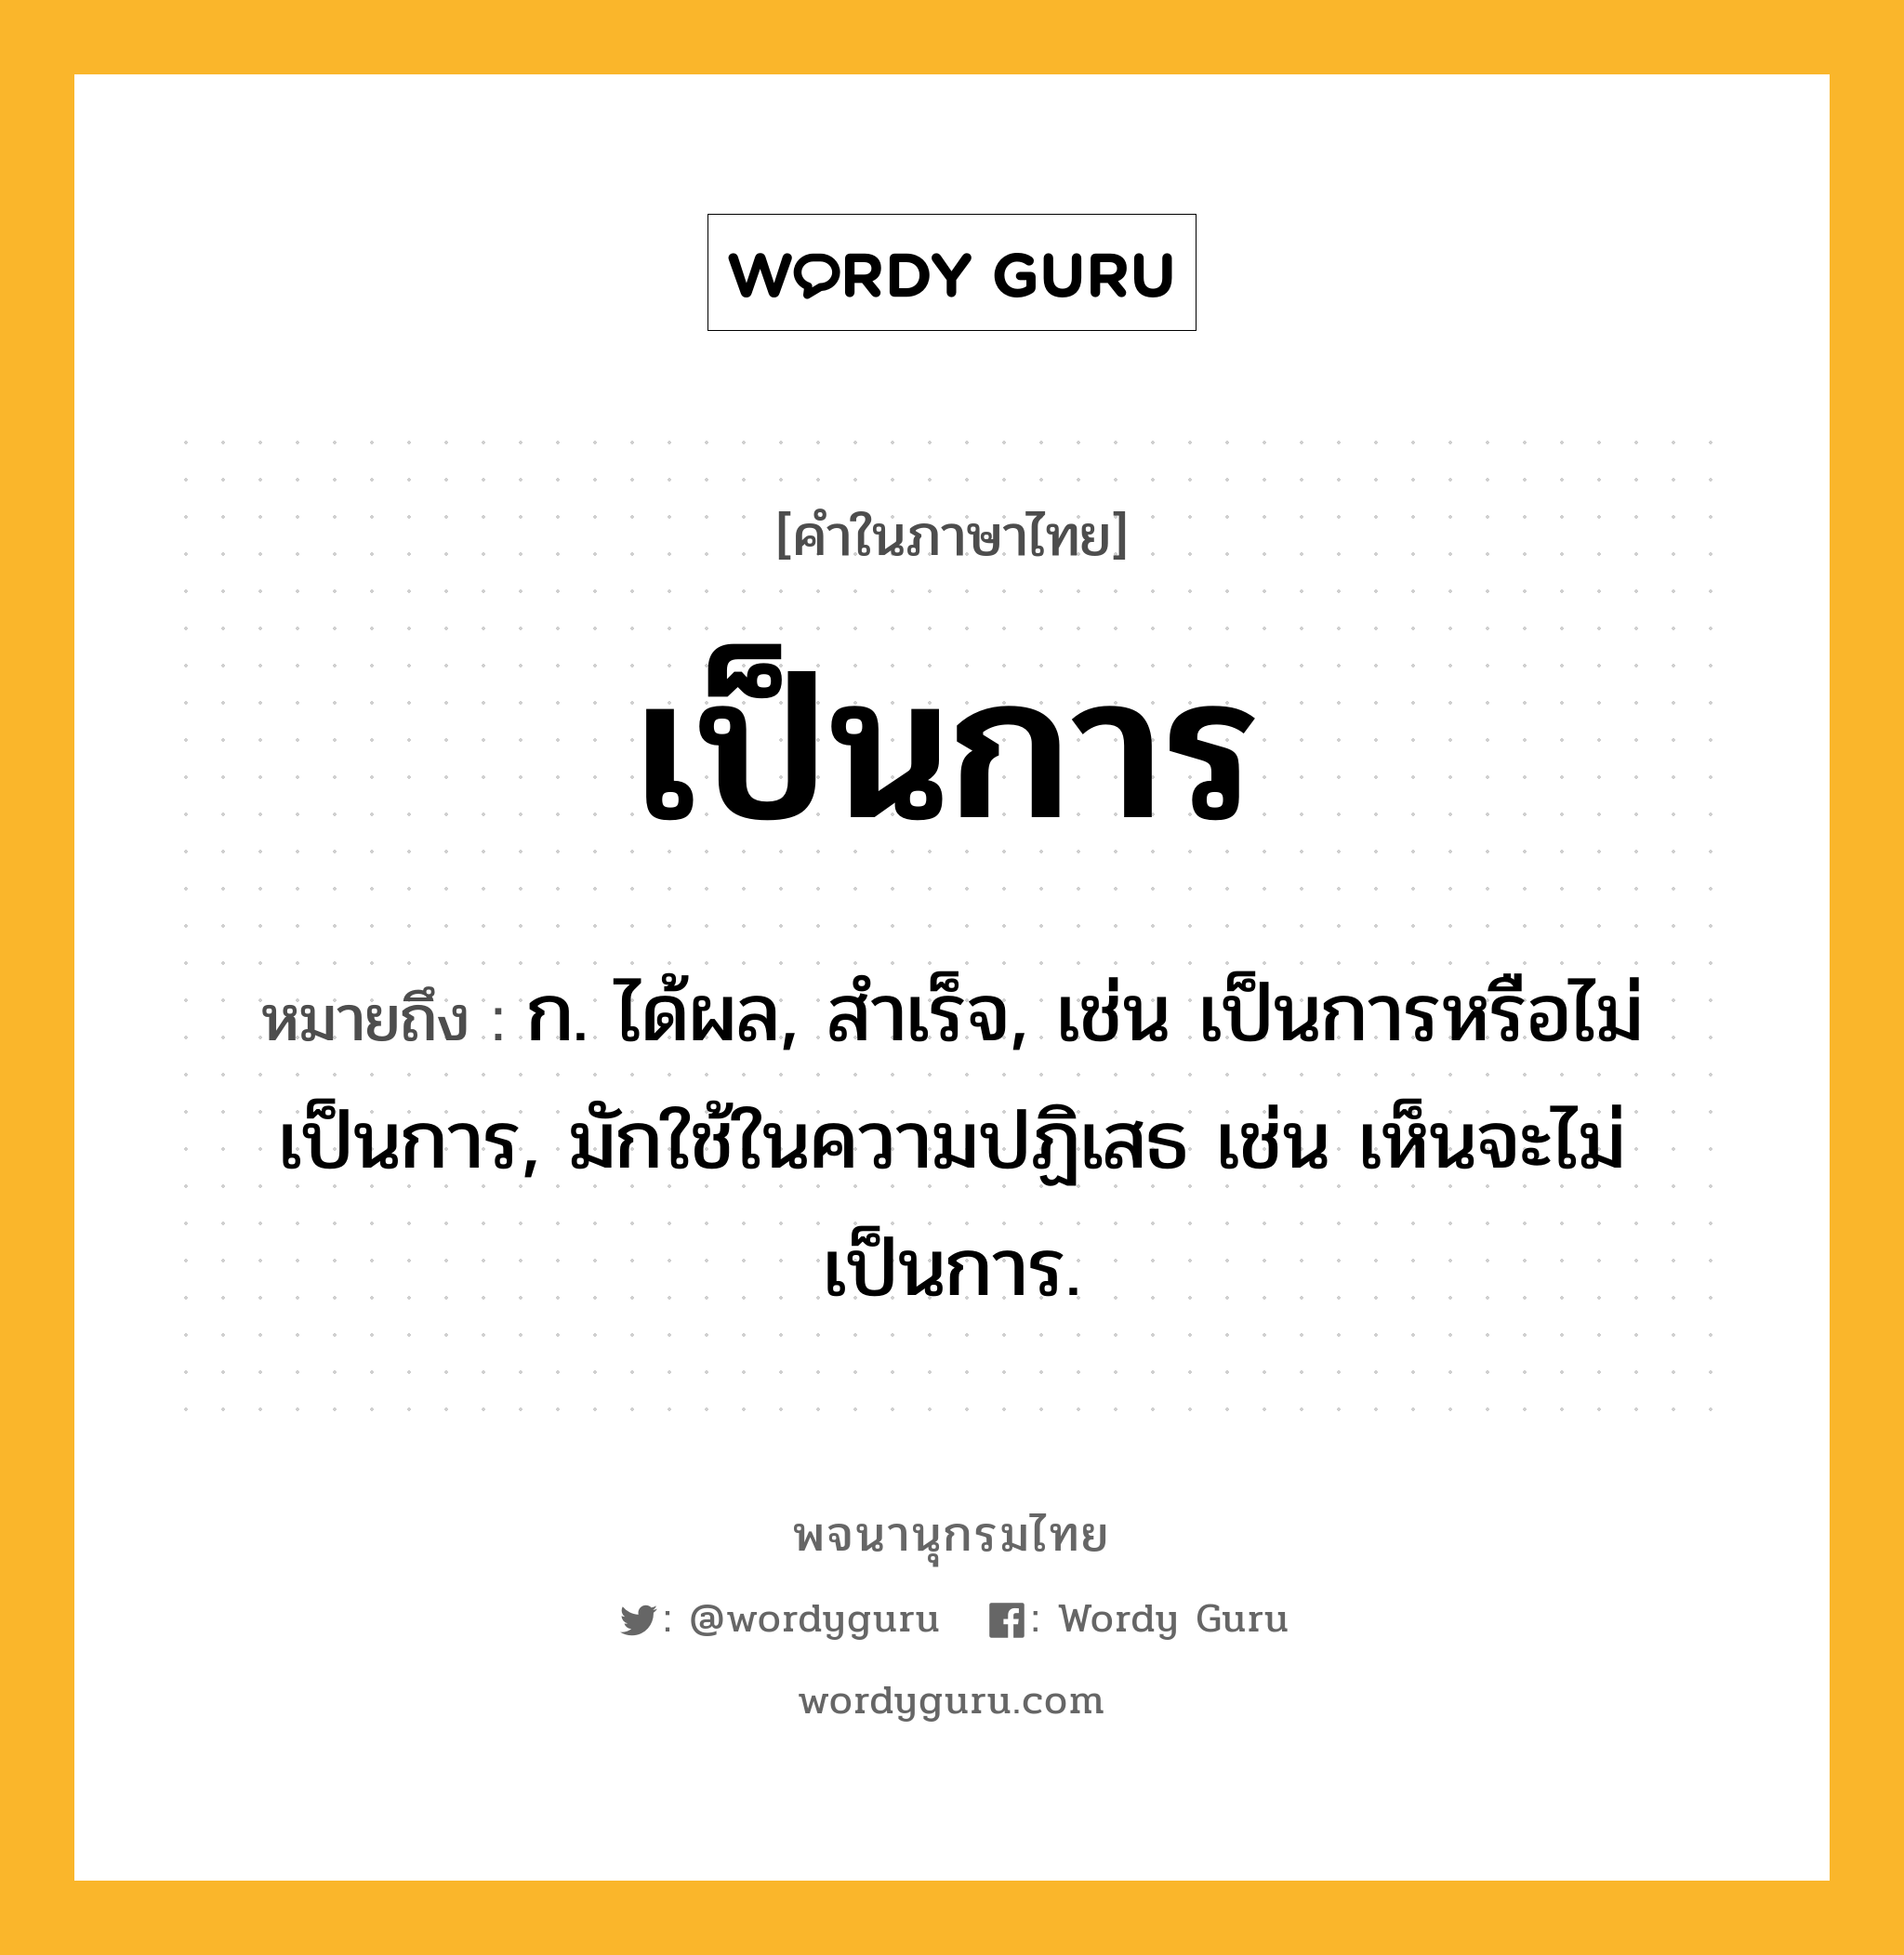 เป็นการ หมายถึงอะไร?, คำในภาษาไทย เป็นการ หมายถึง ก. ได้ผล, สําเร็จ, เช่น เป็นการหรือไม่เป็นการ, มักใช้ในความปฏิเสธ เช่น เห็นจะไม่เป็นการ.